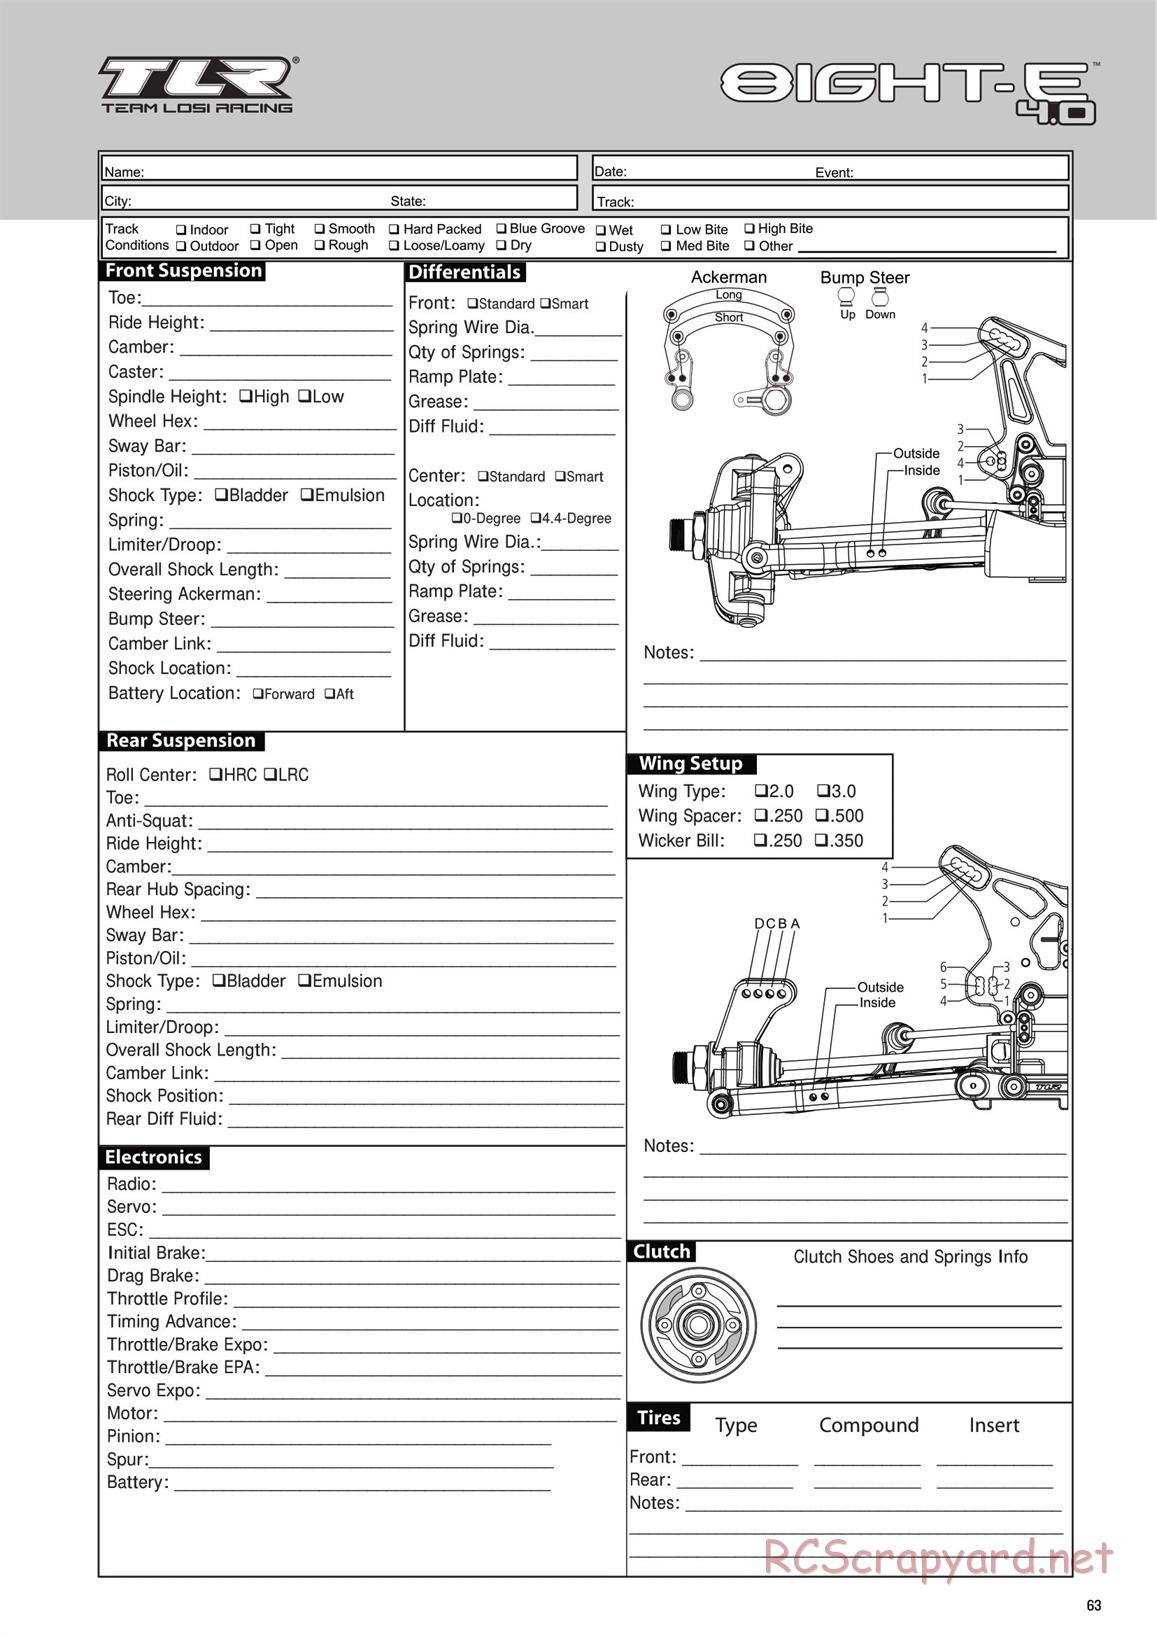 Team Losi - 8ight-E 4.0 - Manual - Page 63